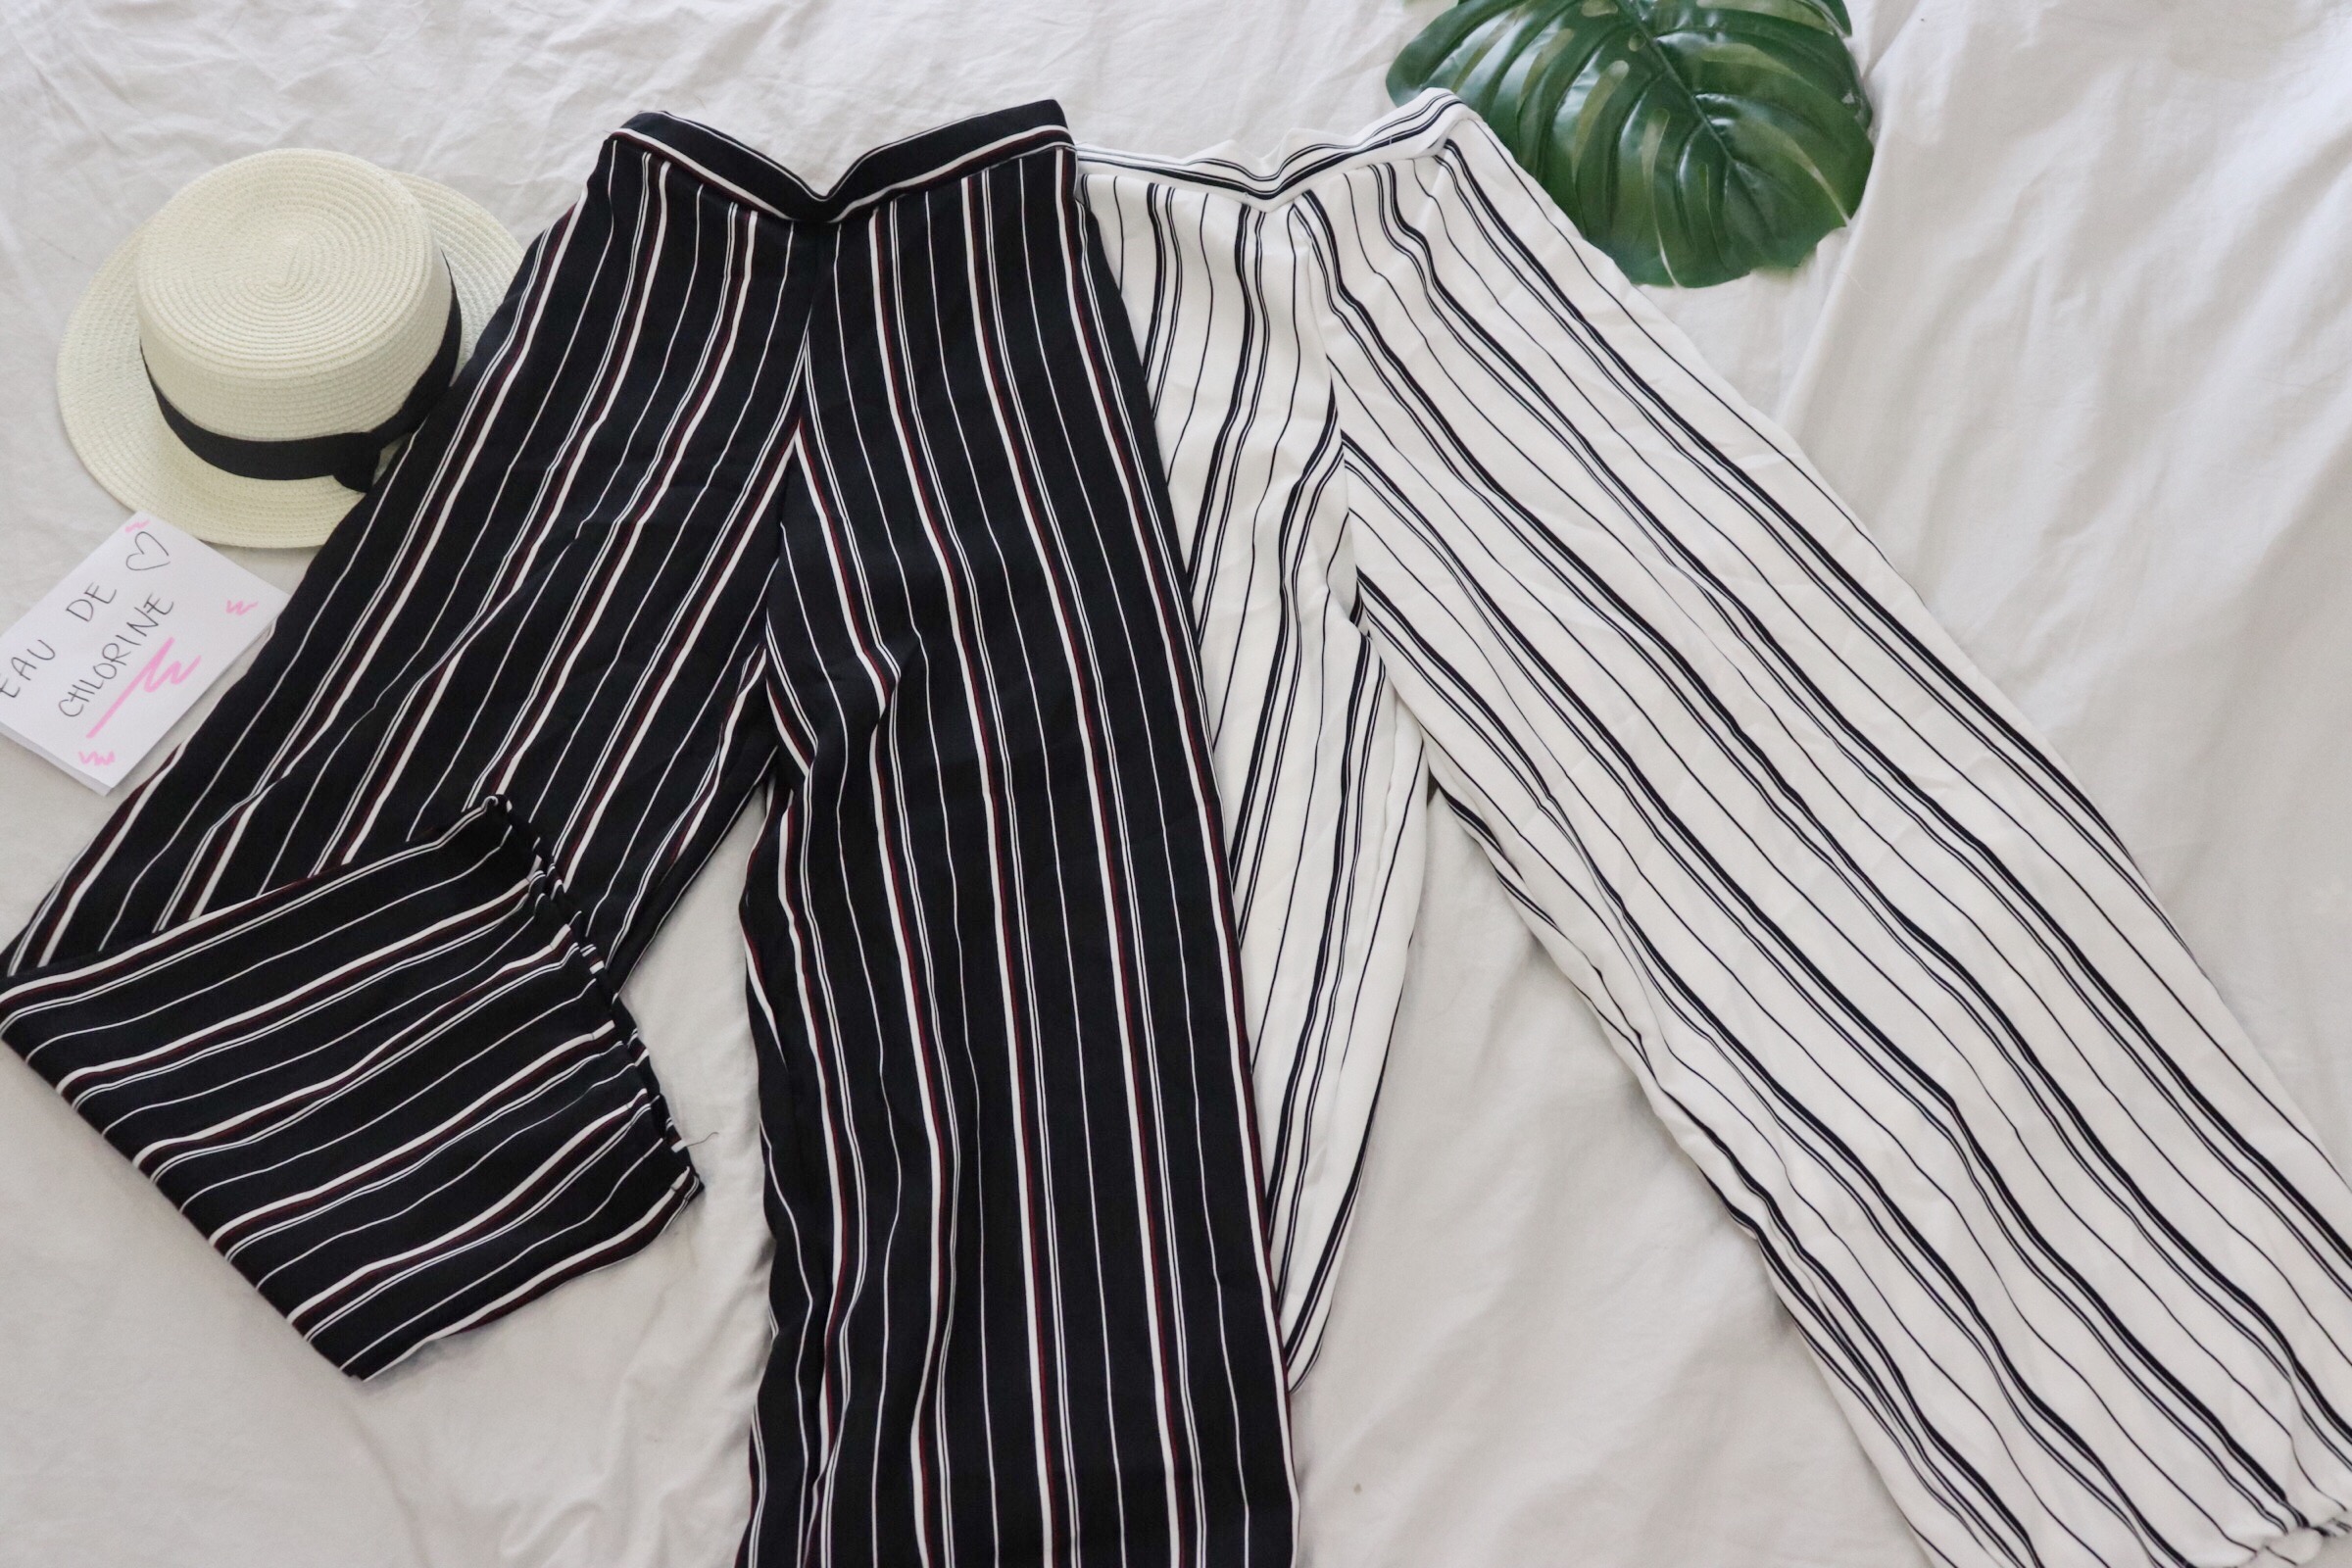 square pants stripes